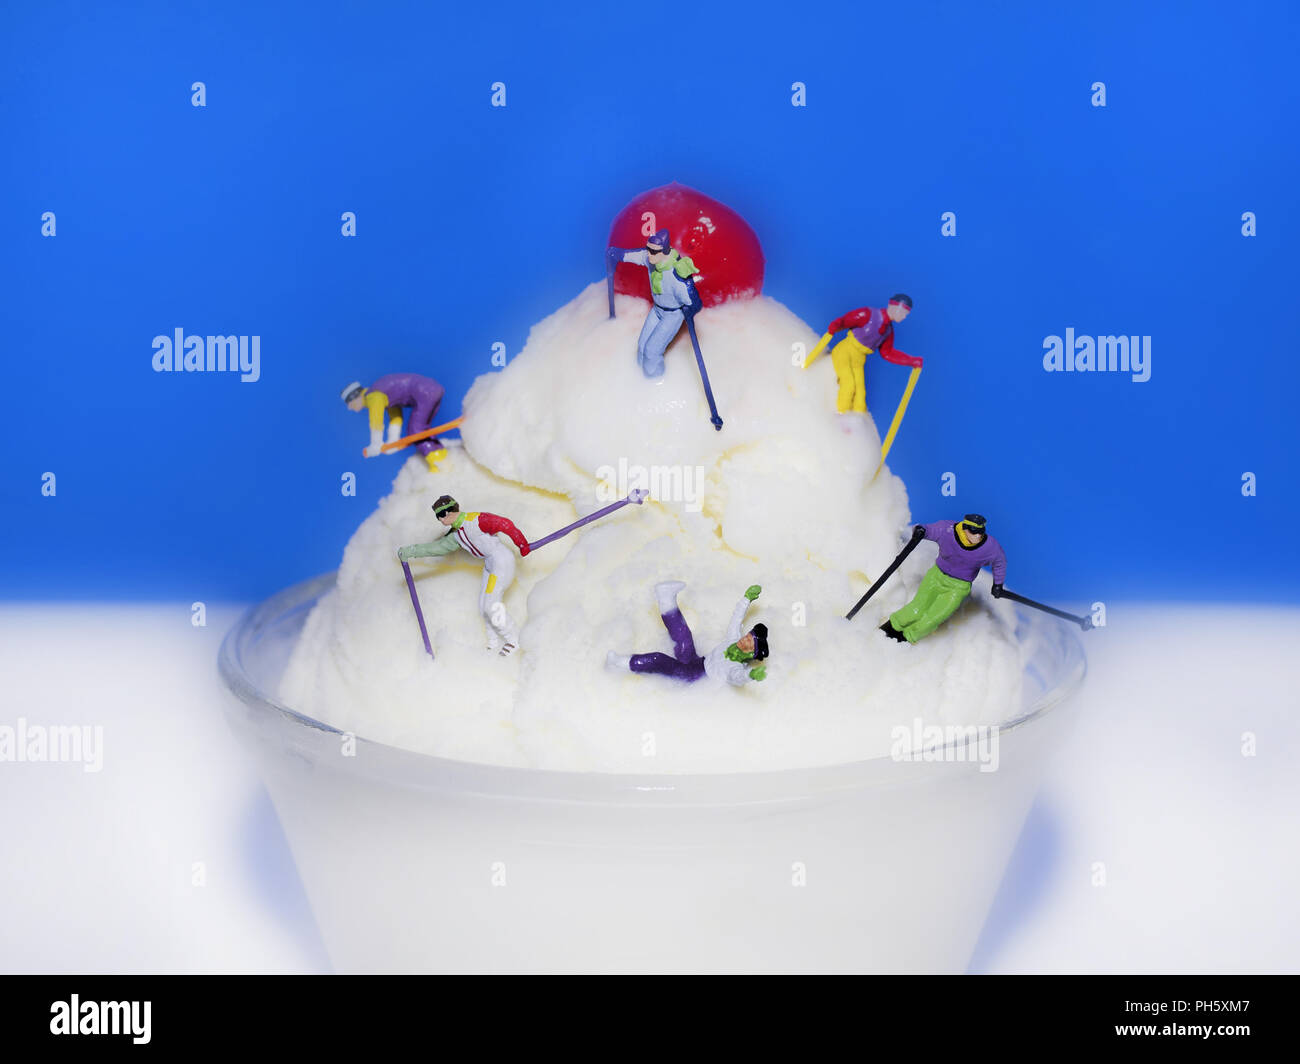 La nourriture, macro, les skieurs, les pistes de ski de fond sur une montagne de glace cerise sur le haut de la chute drôle fun concept Banque D'Images